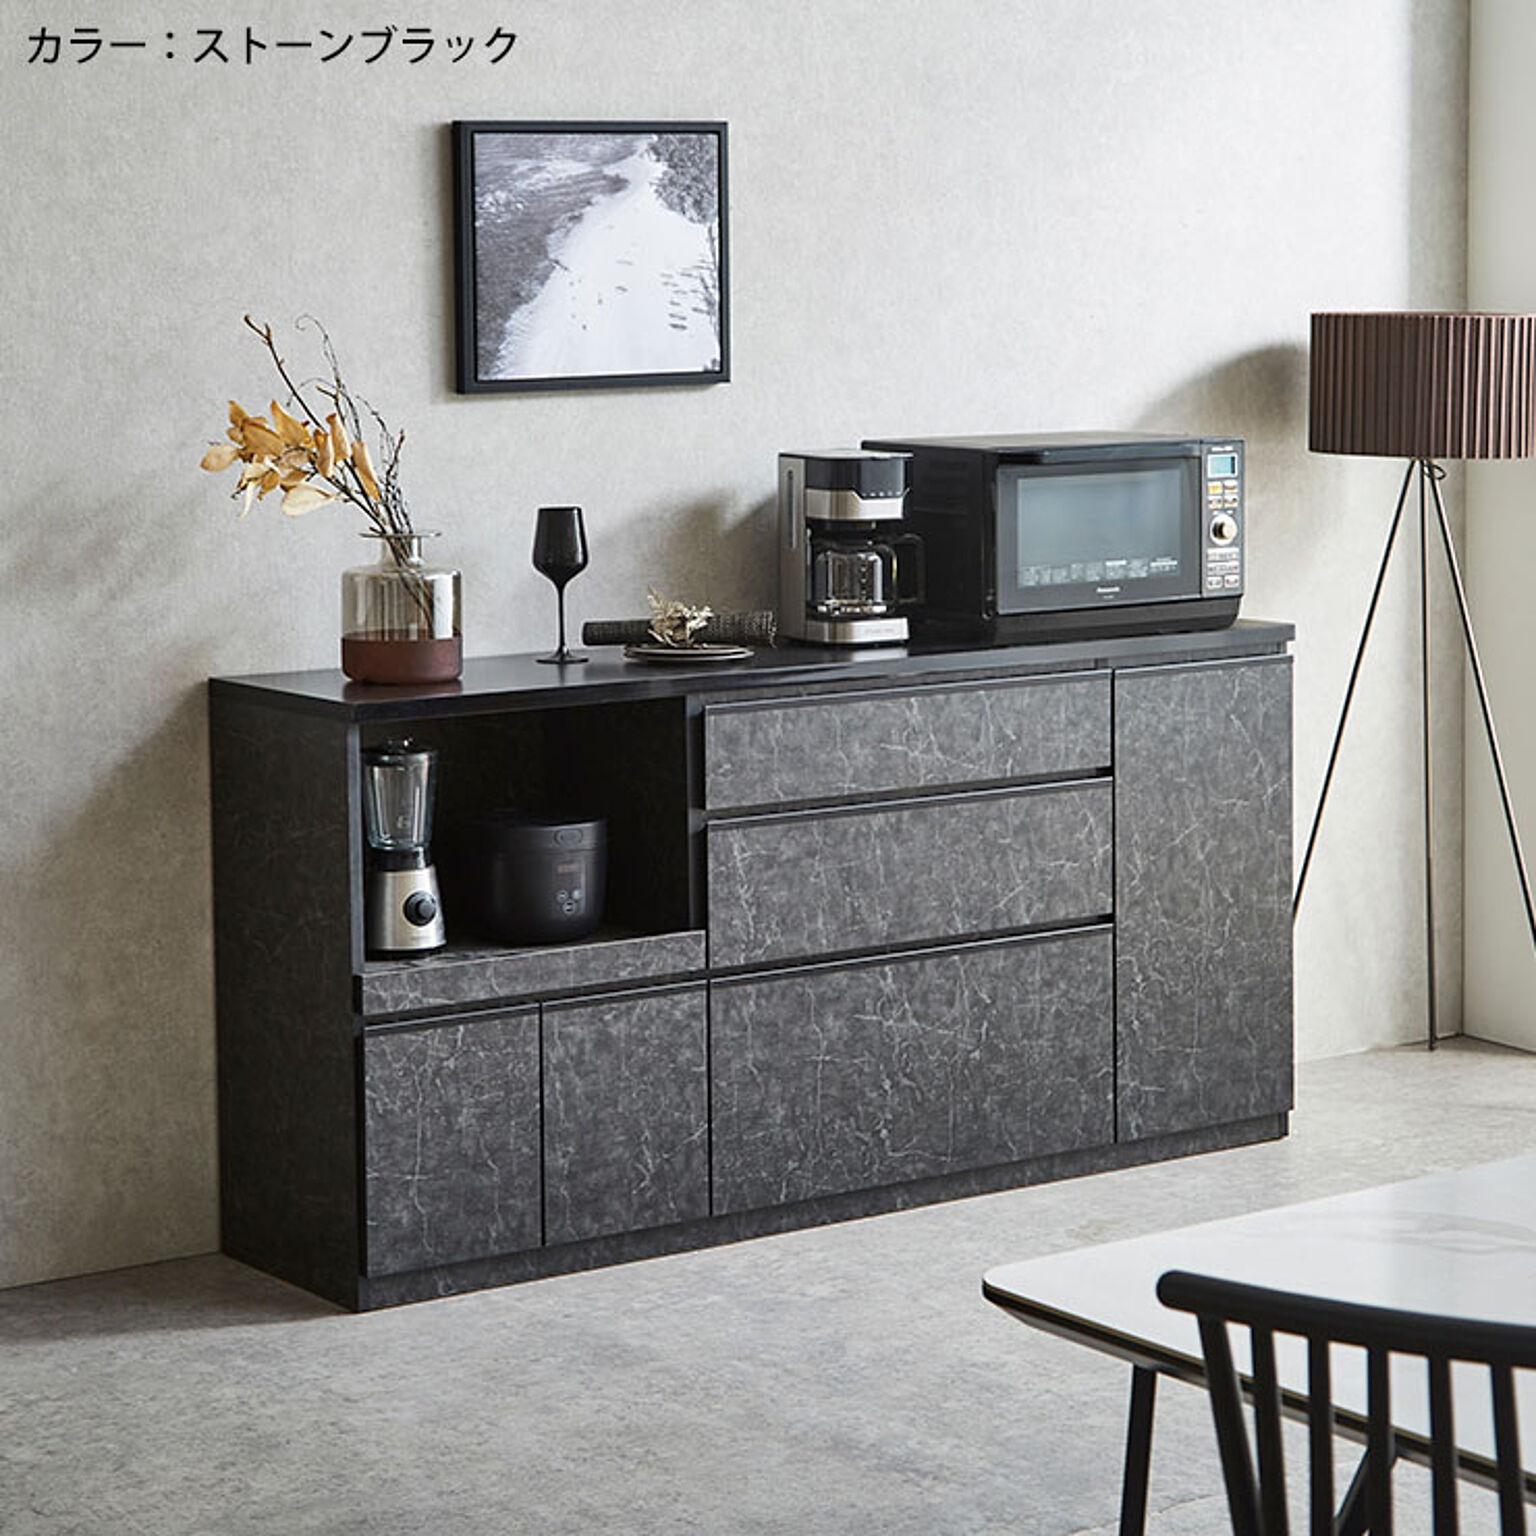 キッチンカウンター アンサンブル 幅178.6cm キッチン収納 レンジ台 完成品 日本製